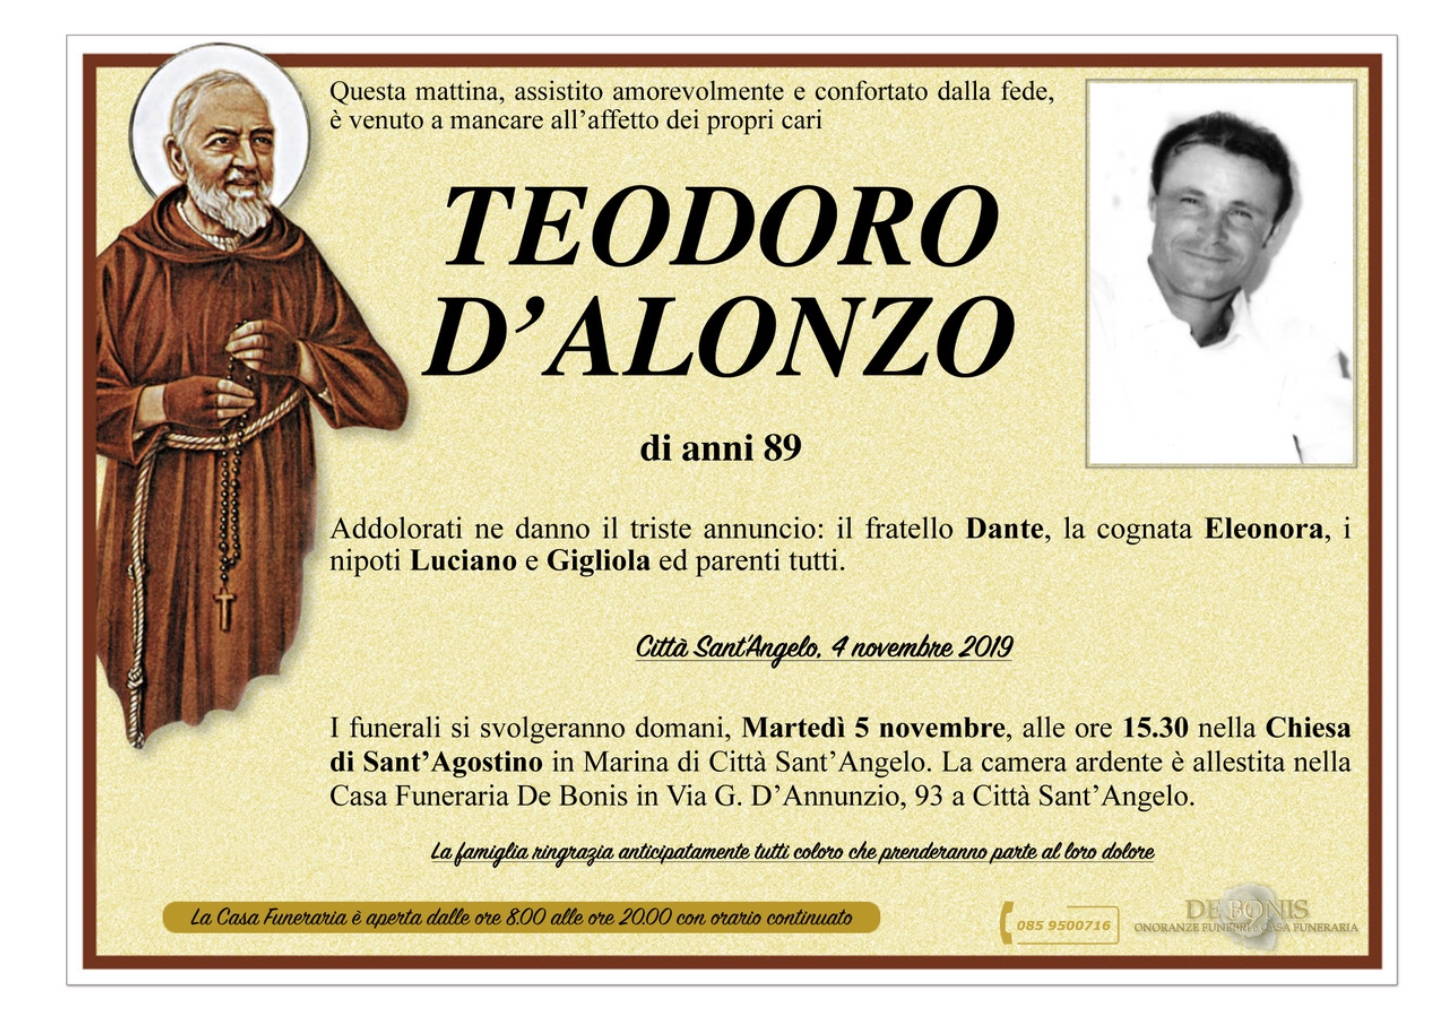 Teodoro D’Alonzo